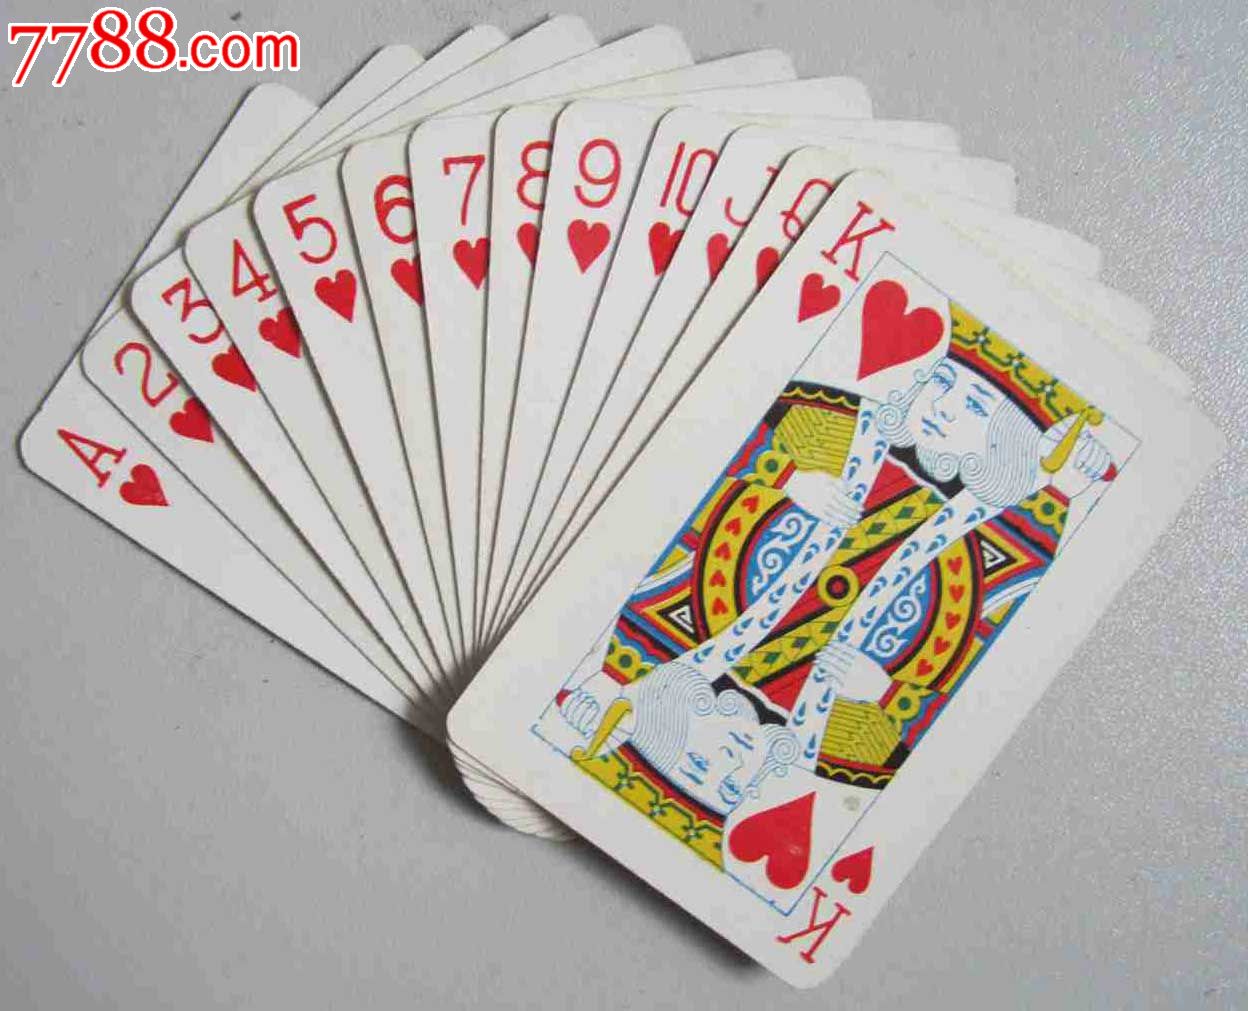 塑光四喜扑克(扑克牌),扑克牌,普通扑克,年代不详,其他图案,矩形,纸质